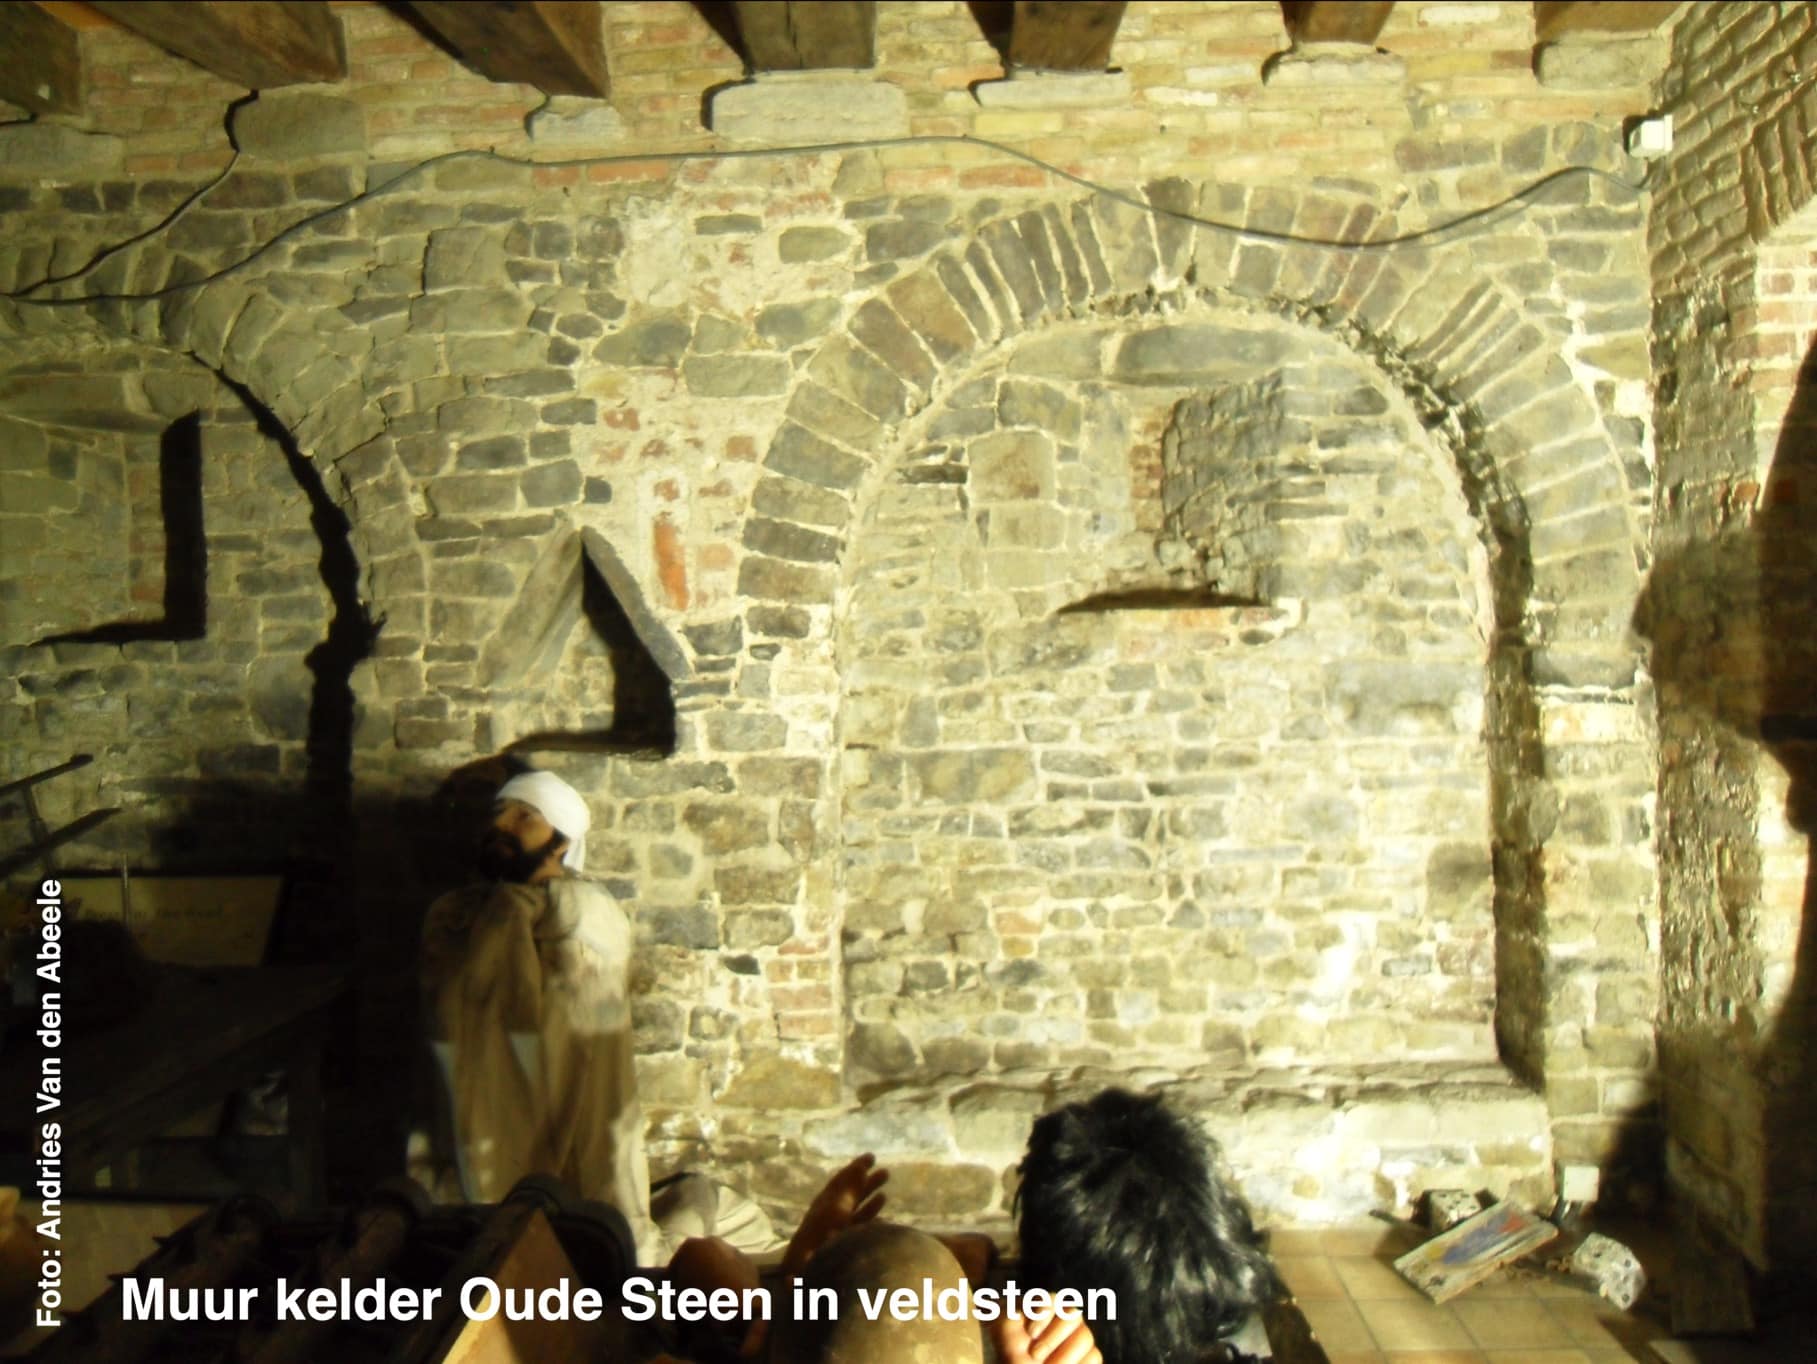 Het oudste stenen huis van Vlaanderen staat in Brugge